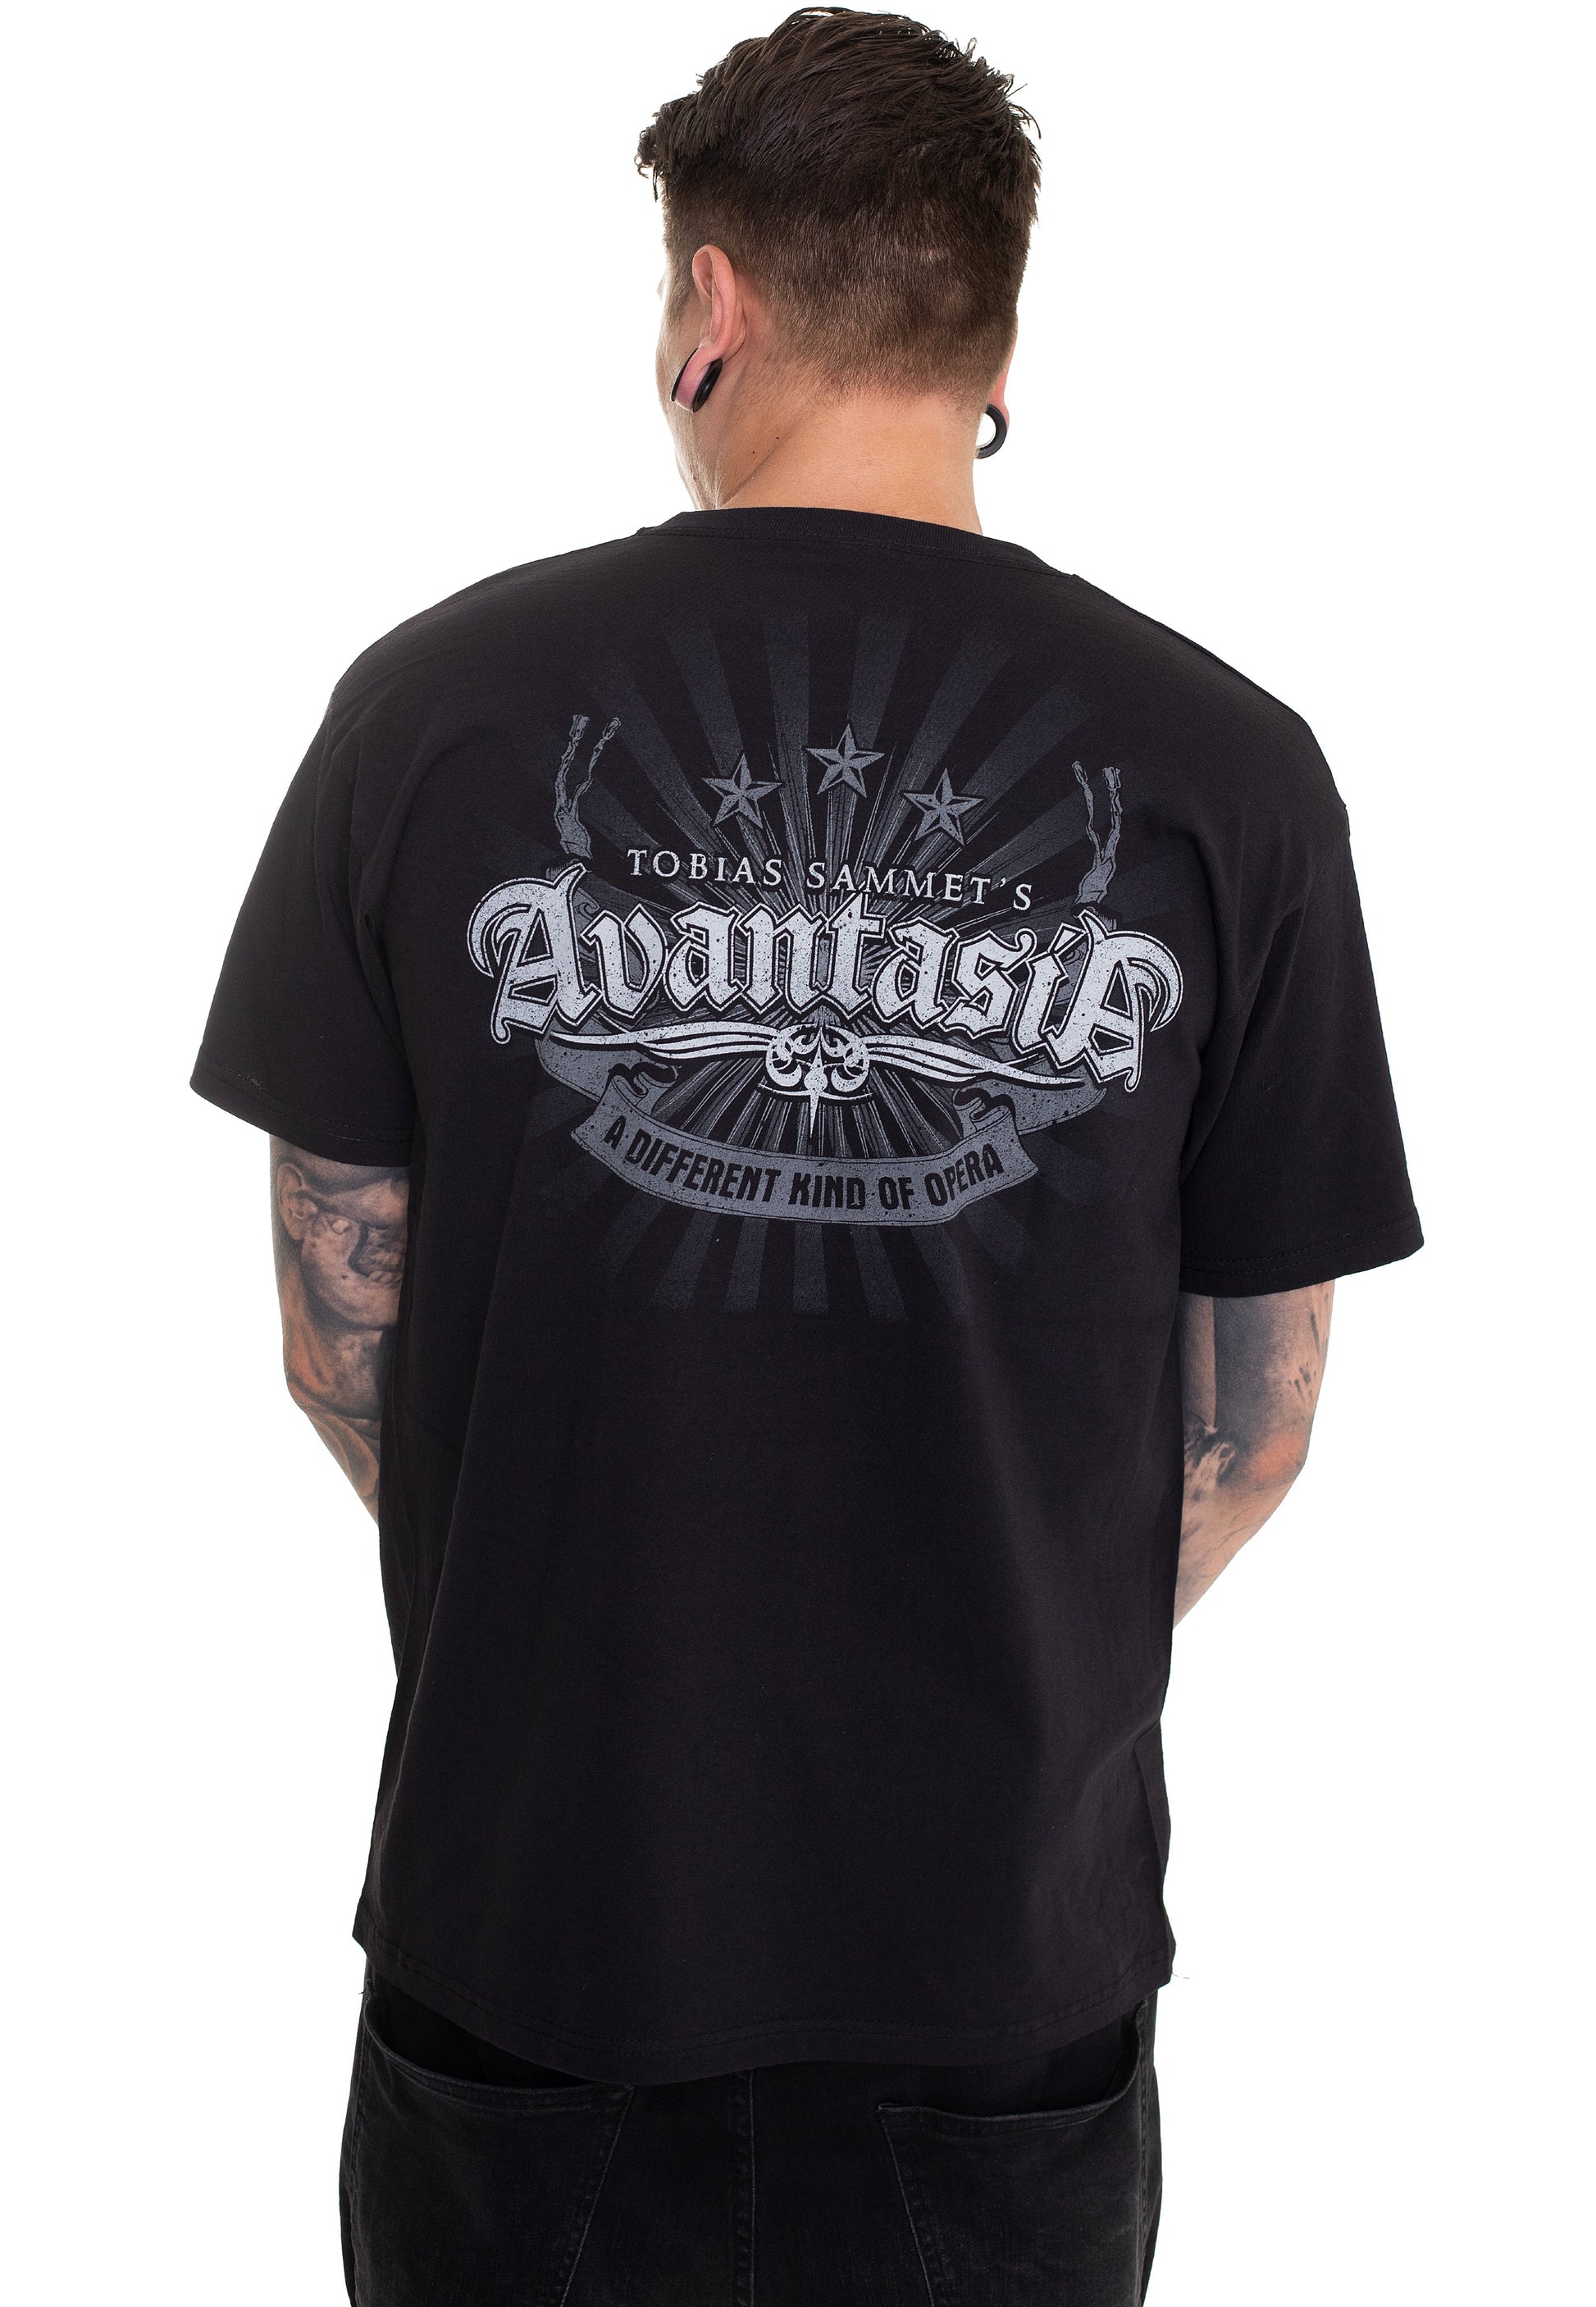 Avantasia - Opera Grotesque - T-Shirt